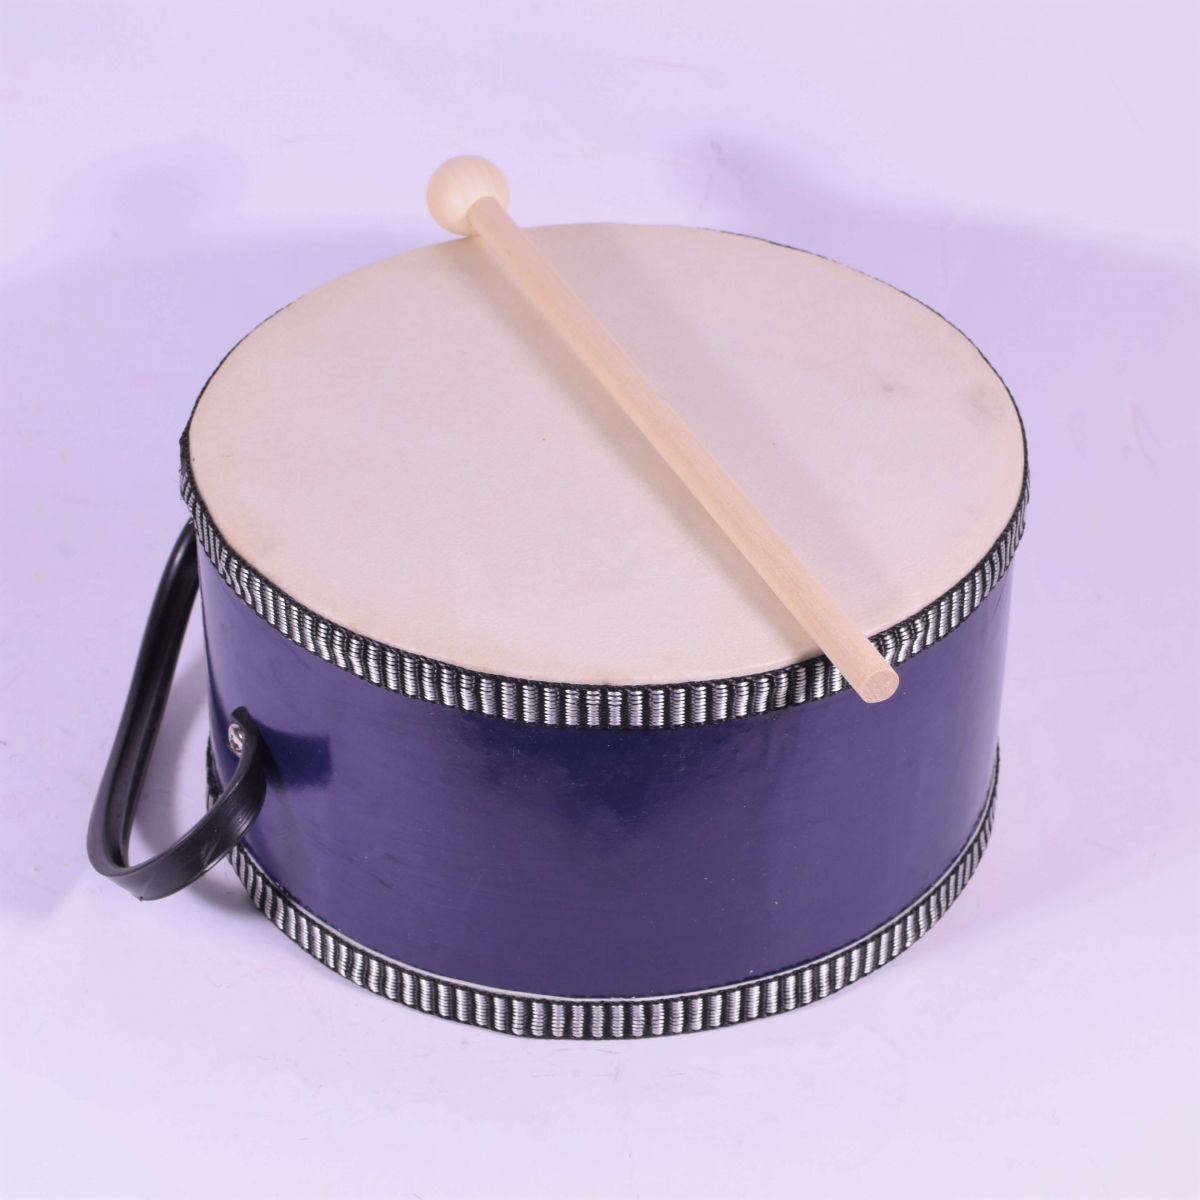 Σουλιώτης Μουσικό Όργανο Ταμπούρλο- 2 Χρώματα (07-TH7-2)